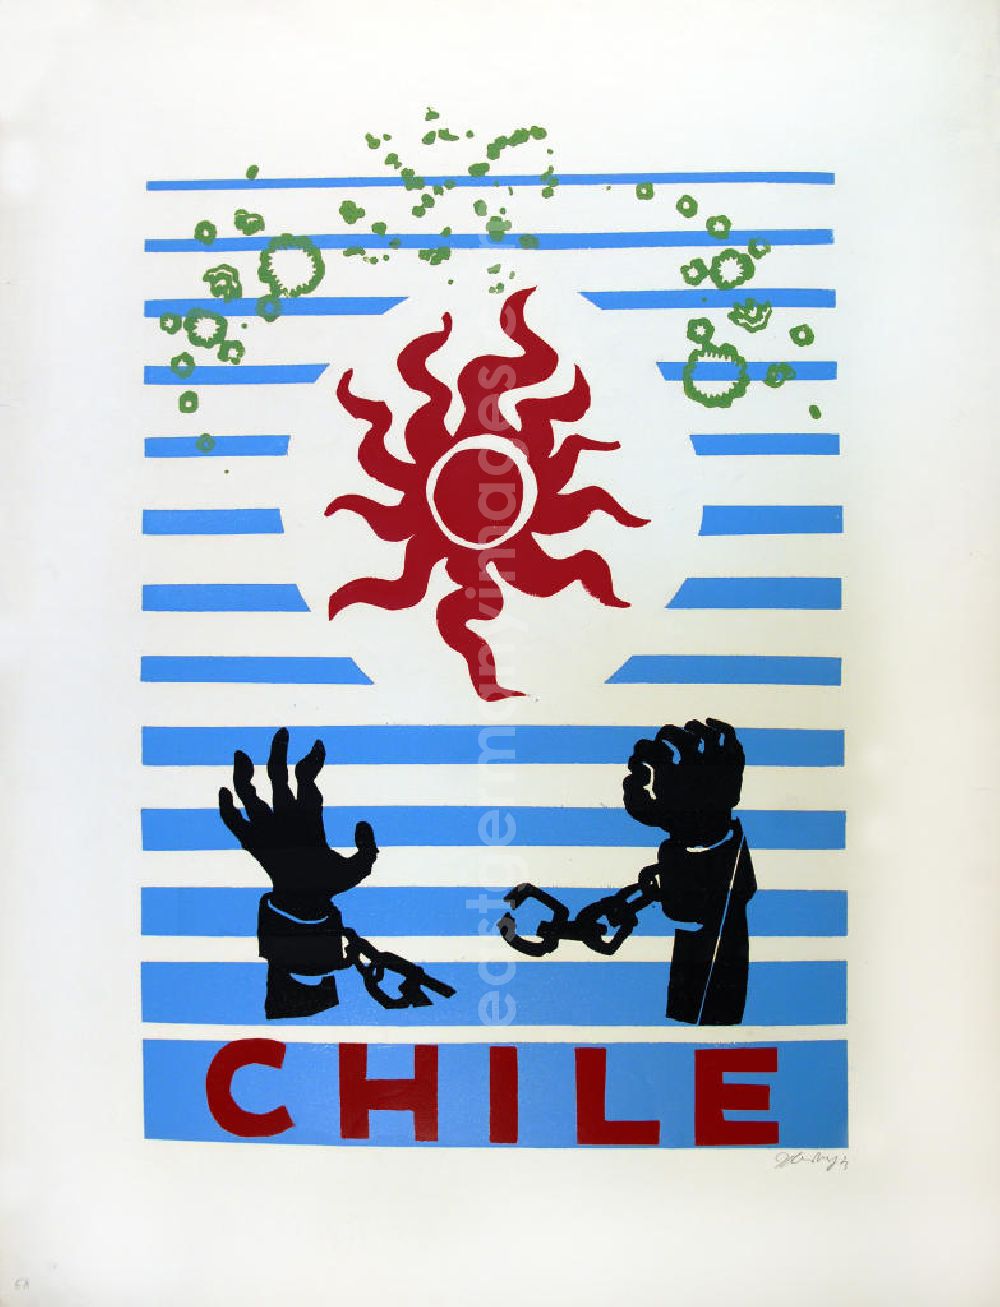 GDR picture archive: Berlin - Grafik von Herbert Sandberg Chile aus dem Jahr 1973, 51,2x71,5cm Farbholzschnitt, handsigniert. Unten: zwei Hände in Ketten, Kette ist gerissen, die rechte Hand ist zur Faust geballt; darüber: eine rote Sonne, grüne Kreise/Flecken; im Hintergrund: blaue Streifen, von unten nach oben dünner werdend.